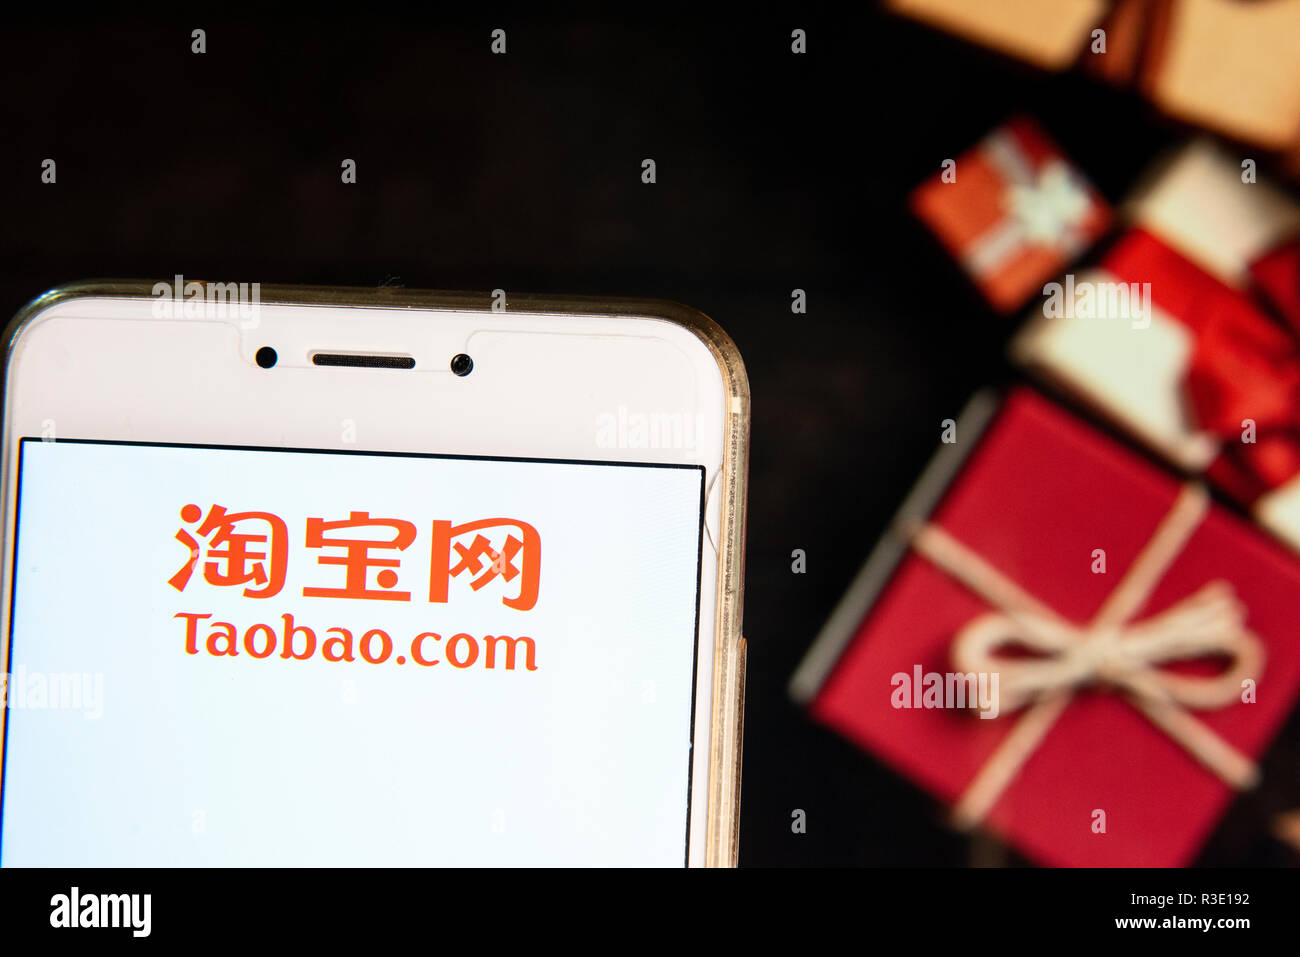 Cinese shopping online il sito web di proprietà del gruppo Alibaba, Taobao,  logo della società è visto su un androide dispositivo mobile con un Natale  regali avvolti in background Foto stock -